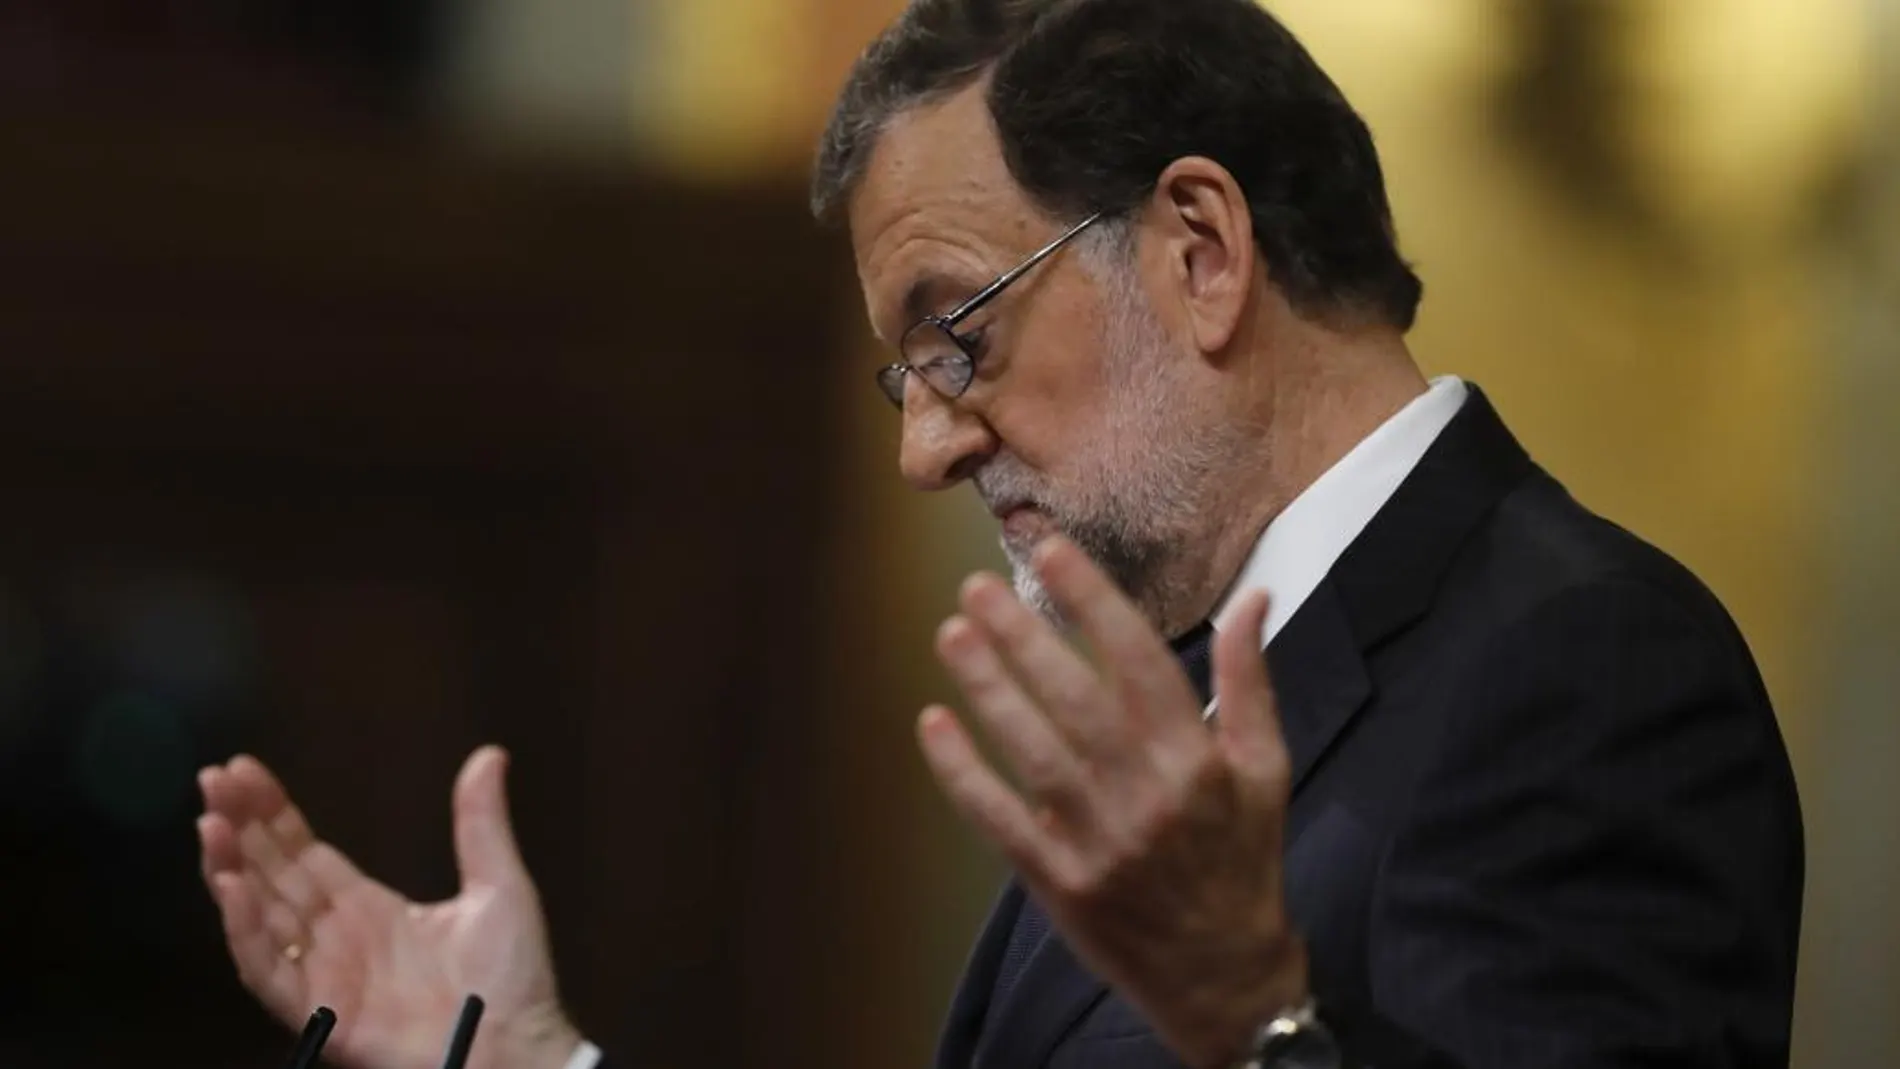 Envejecer rápido, la burla de Rajoy